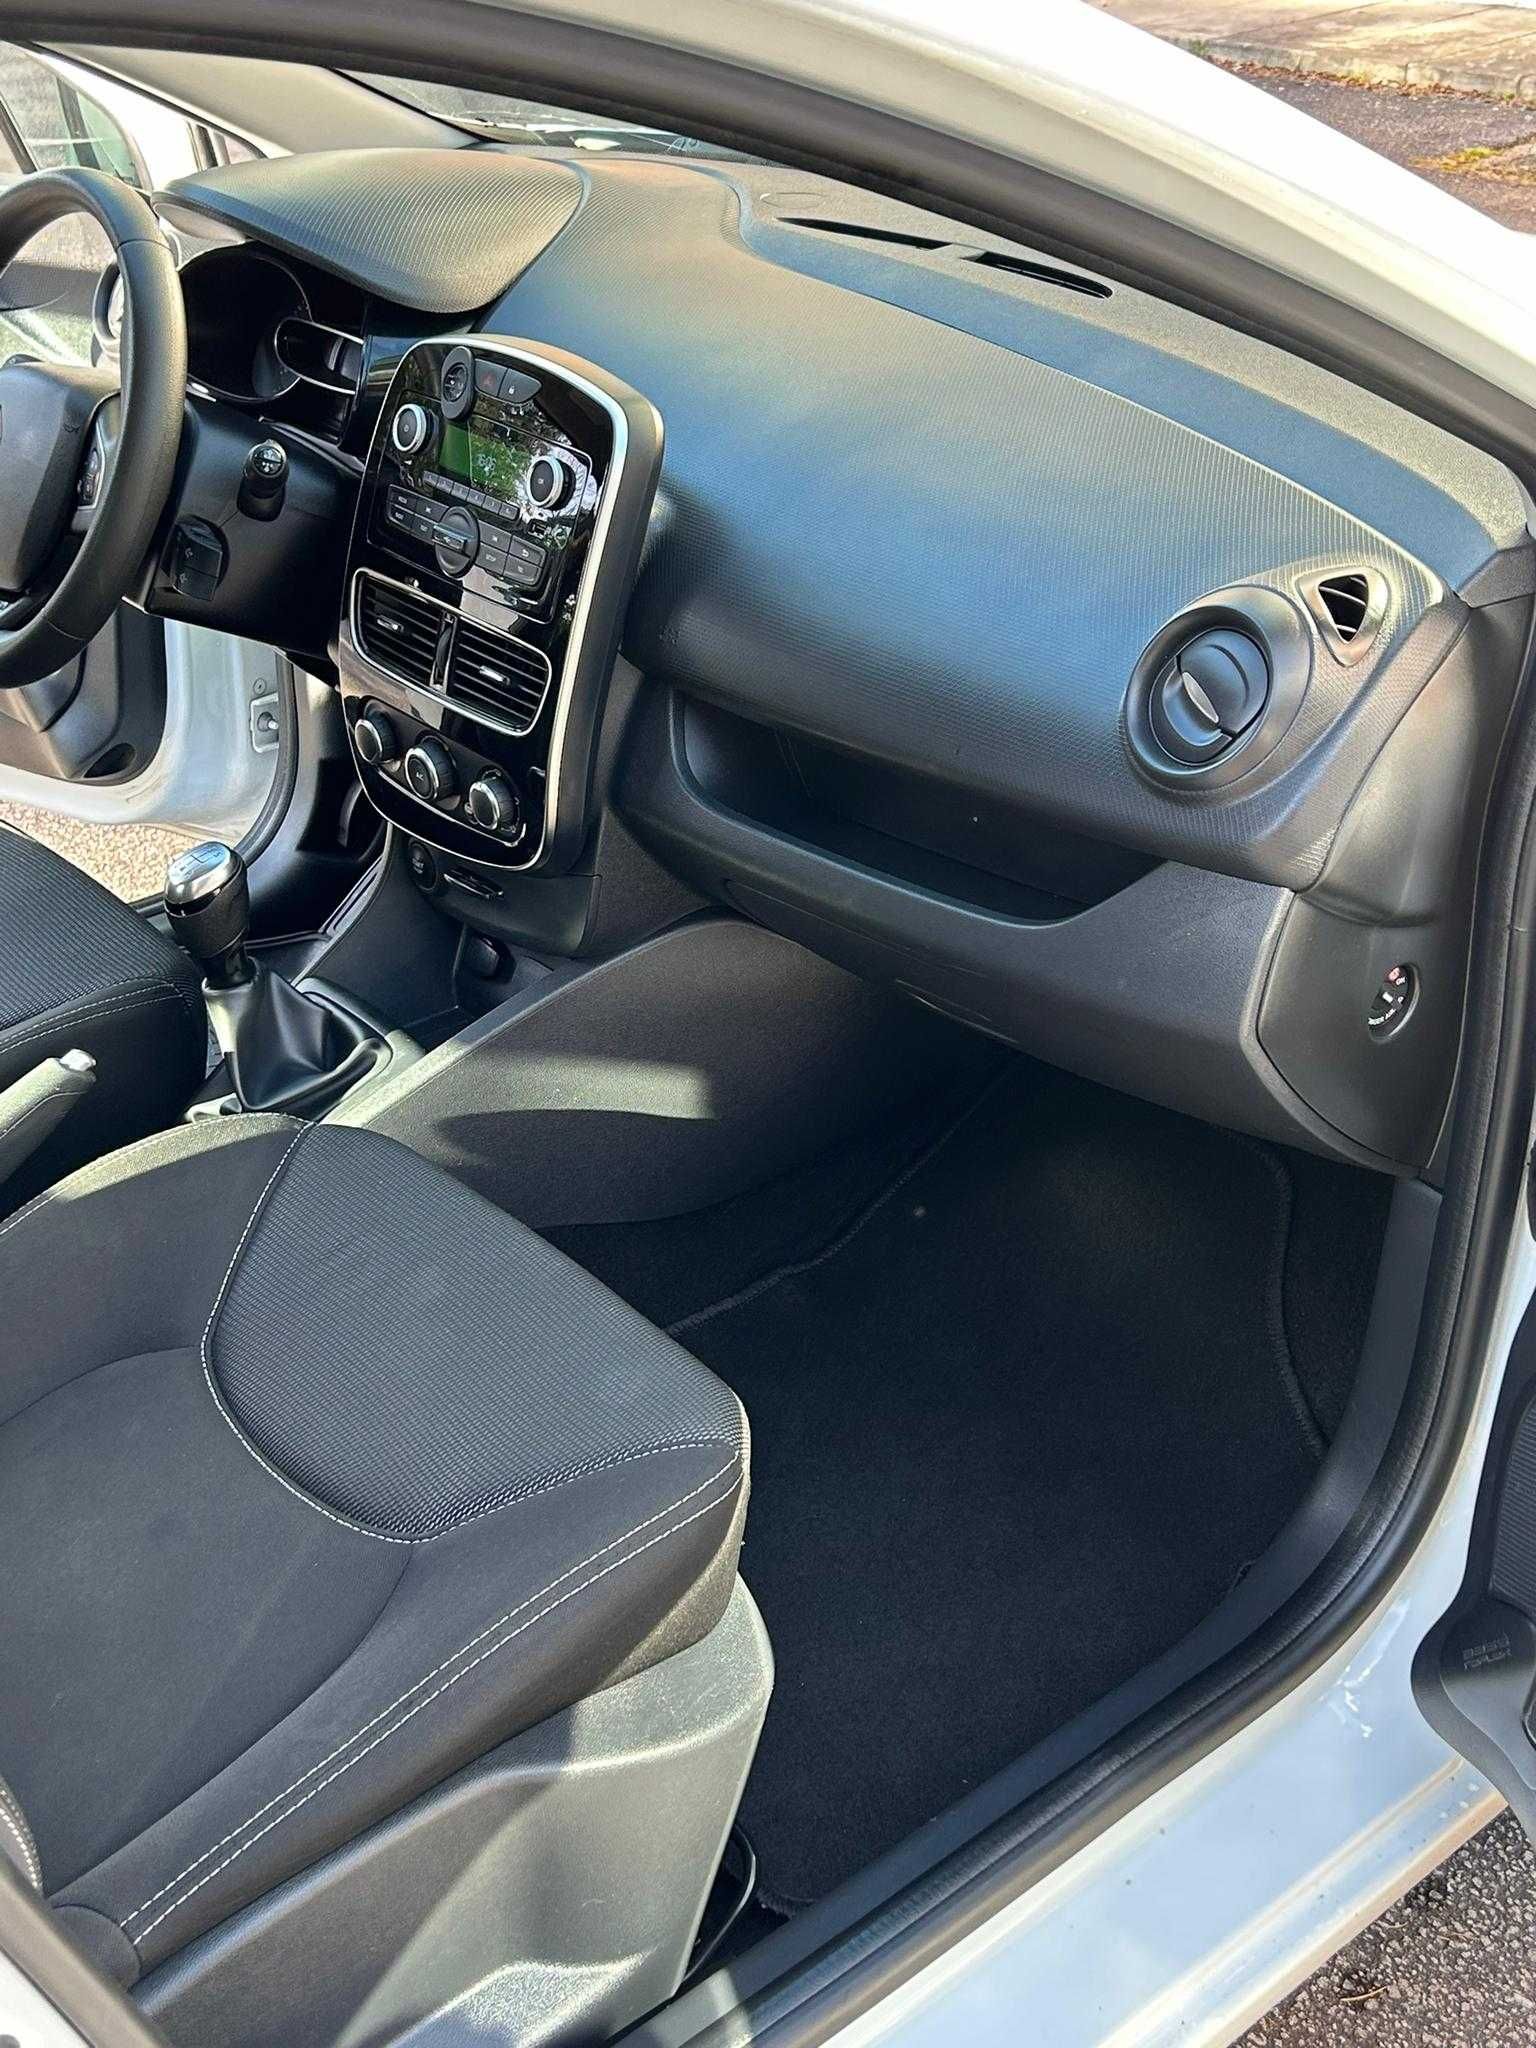 2018 Renault Clio IV 1.5 DCI 75, como novo, apenas 67643 kms